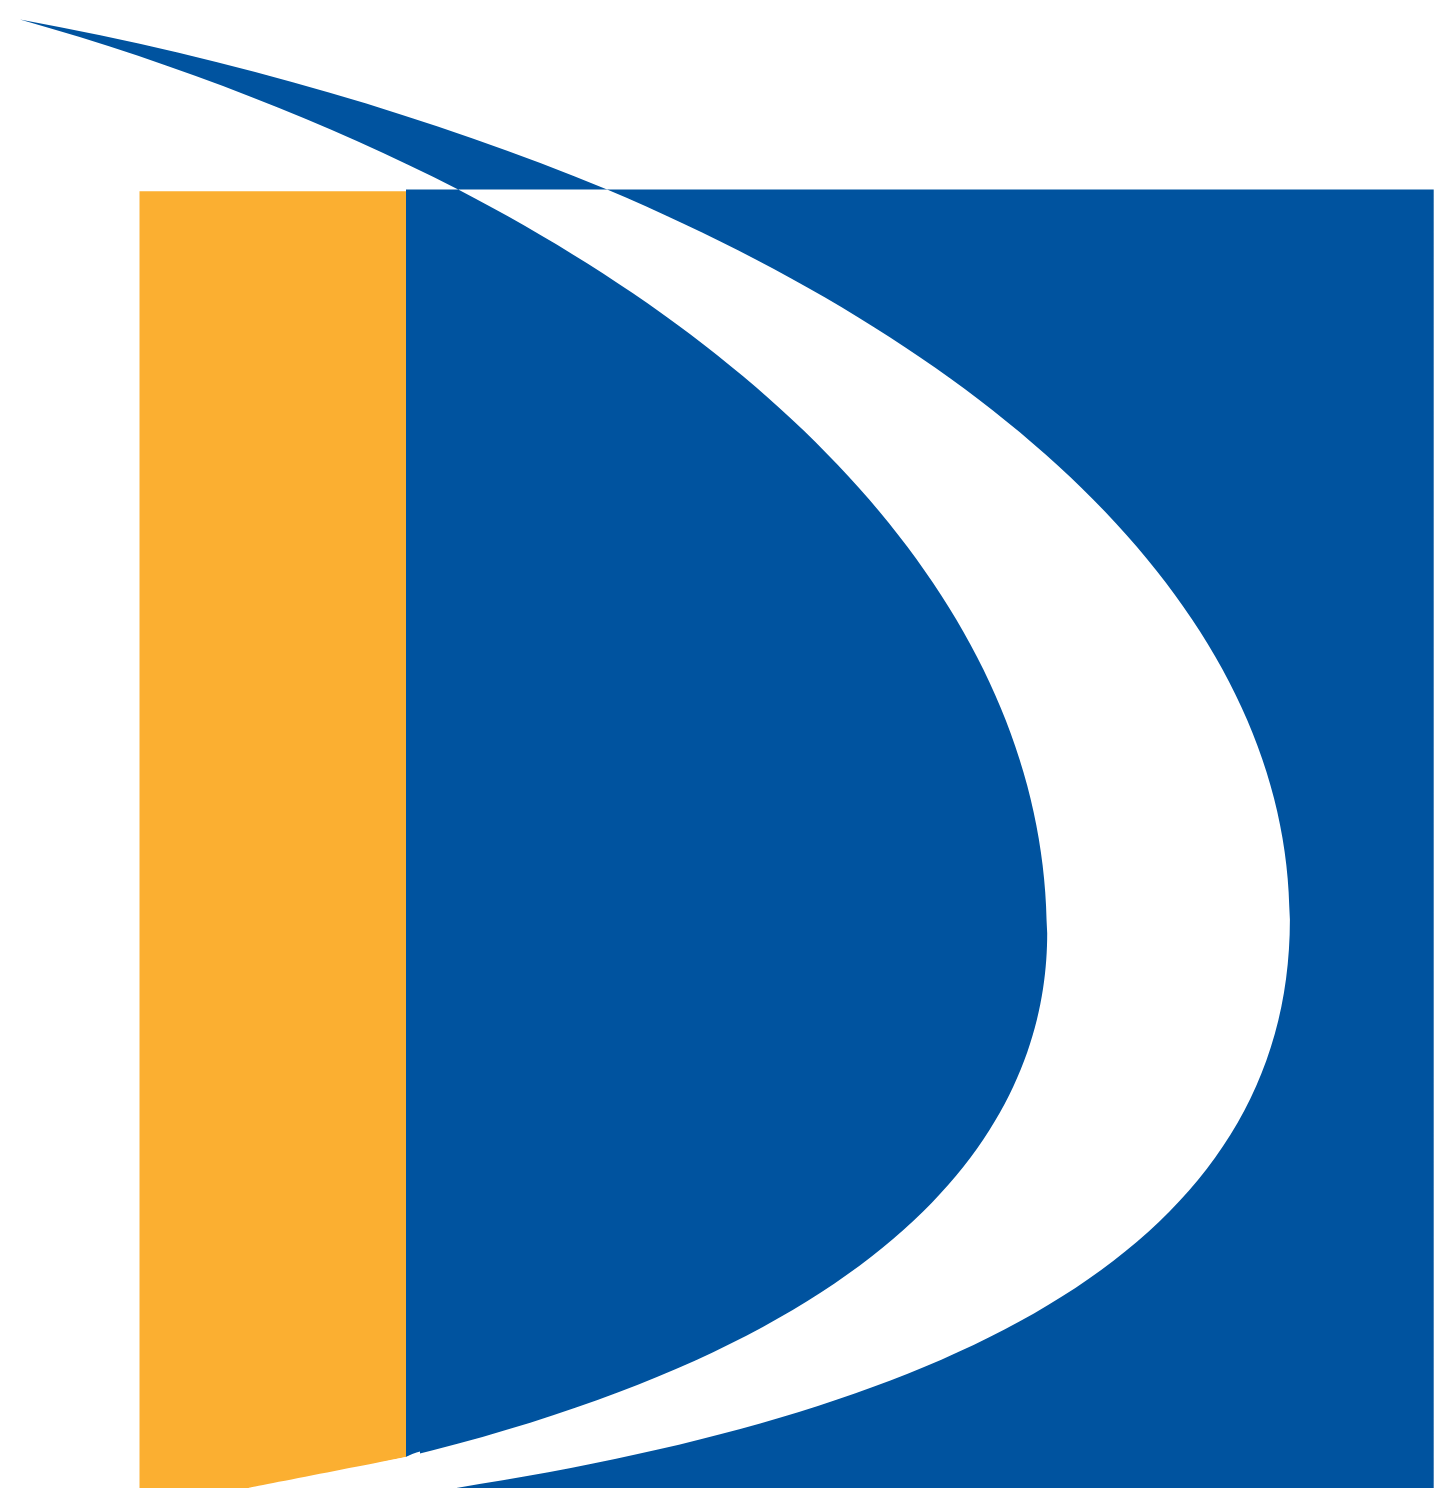 Doha Bank logo (transparent PNG)